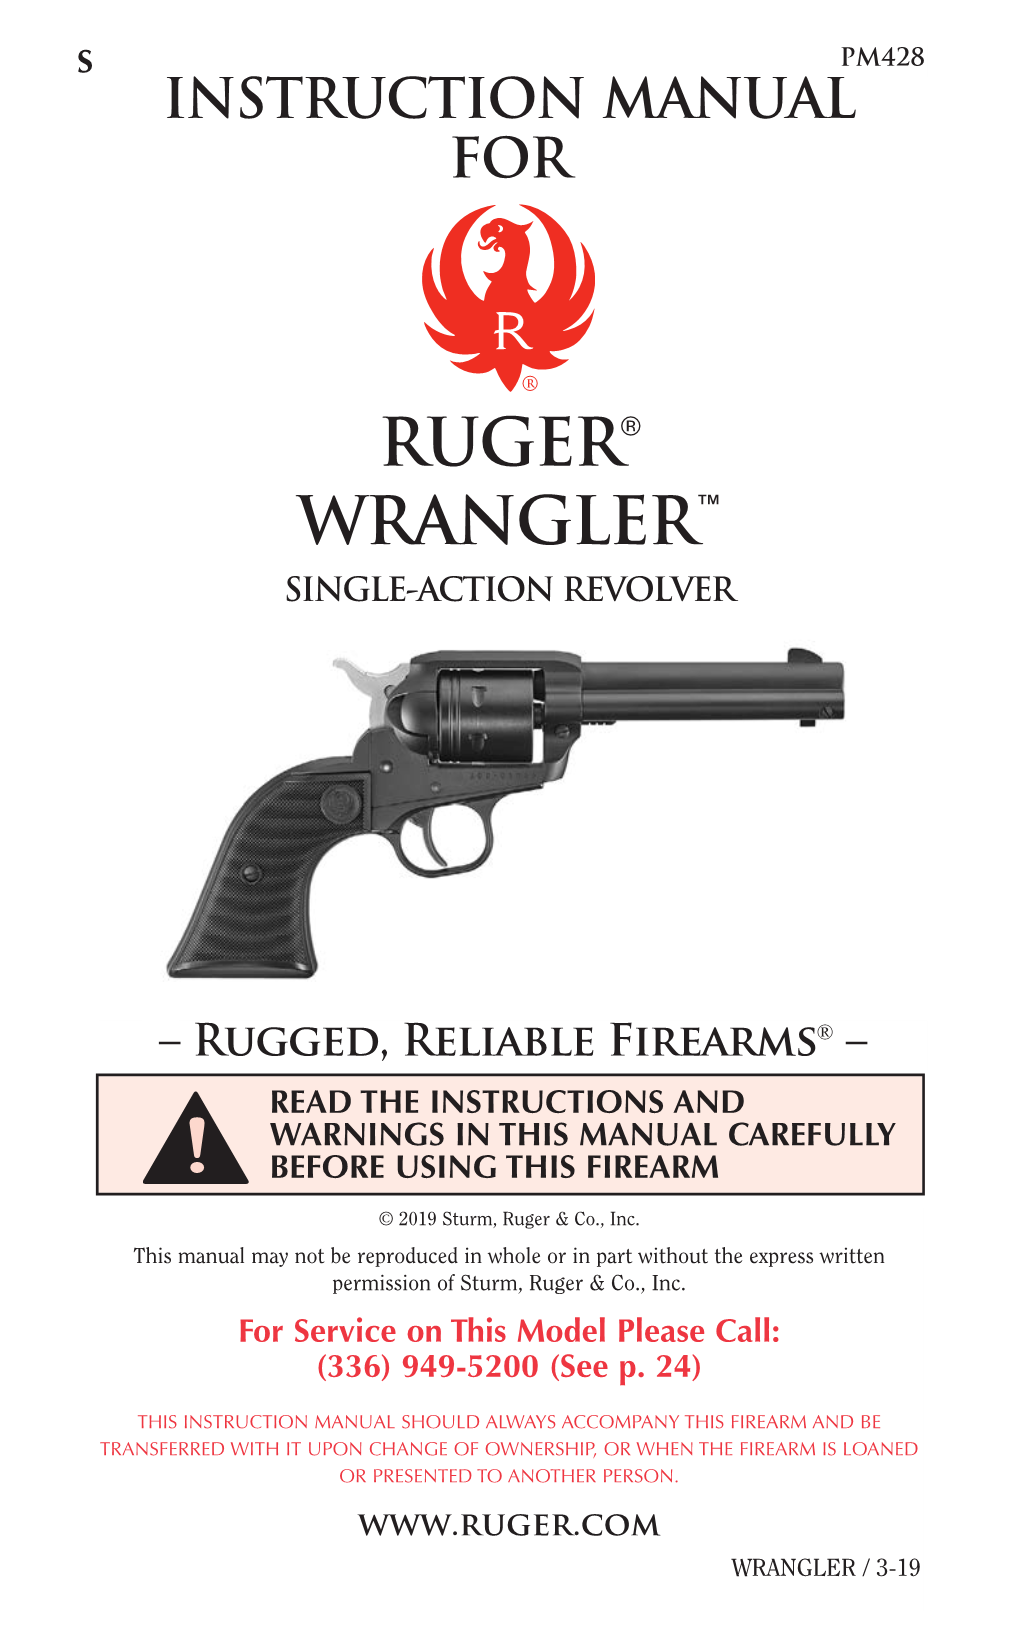 Ruger Wrangler